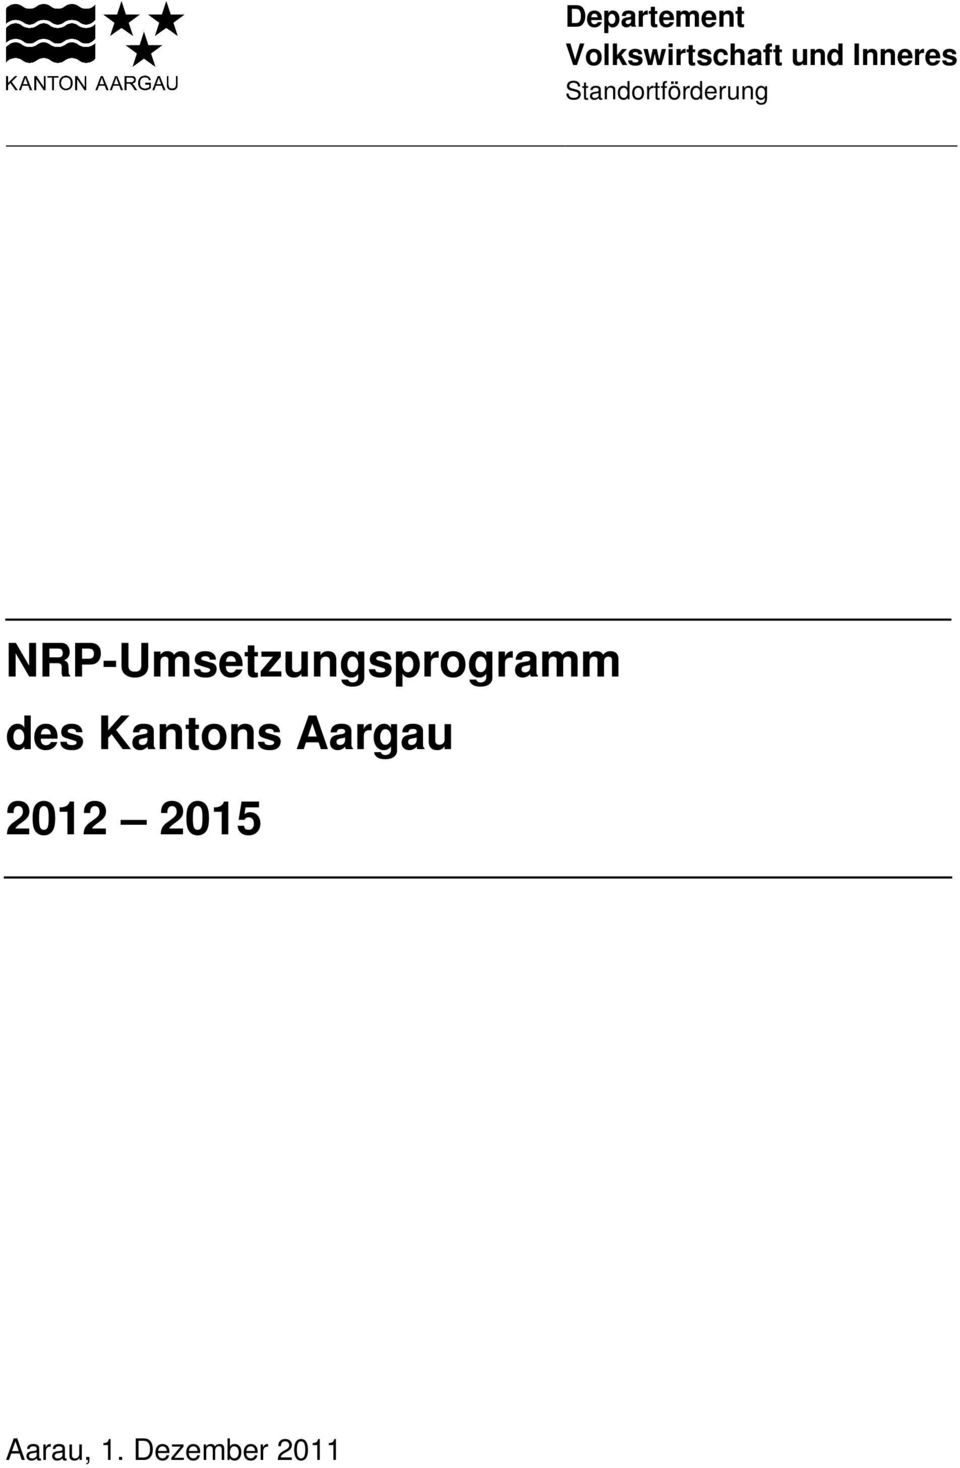 NRP-Umsetzungsprogramm des